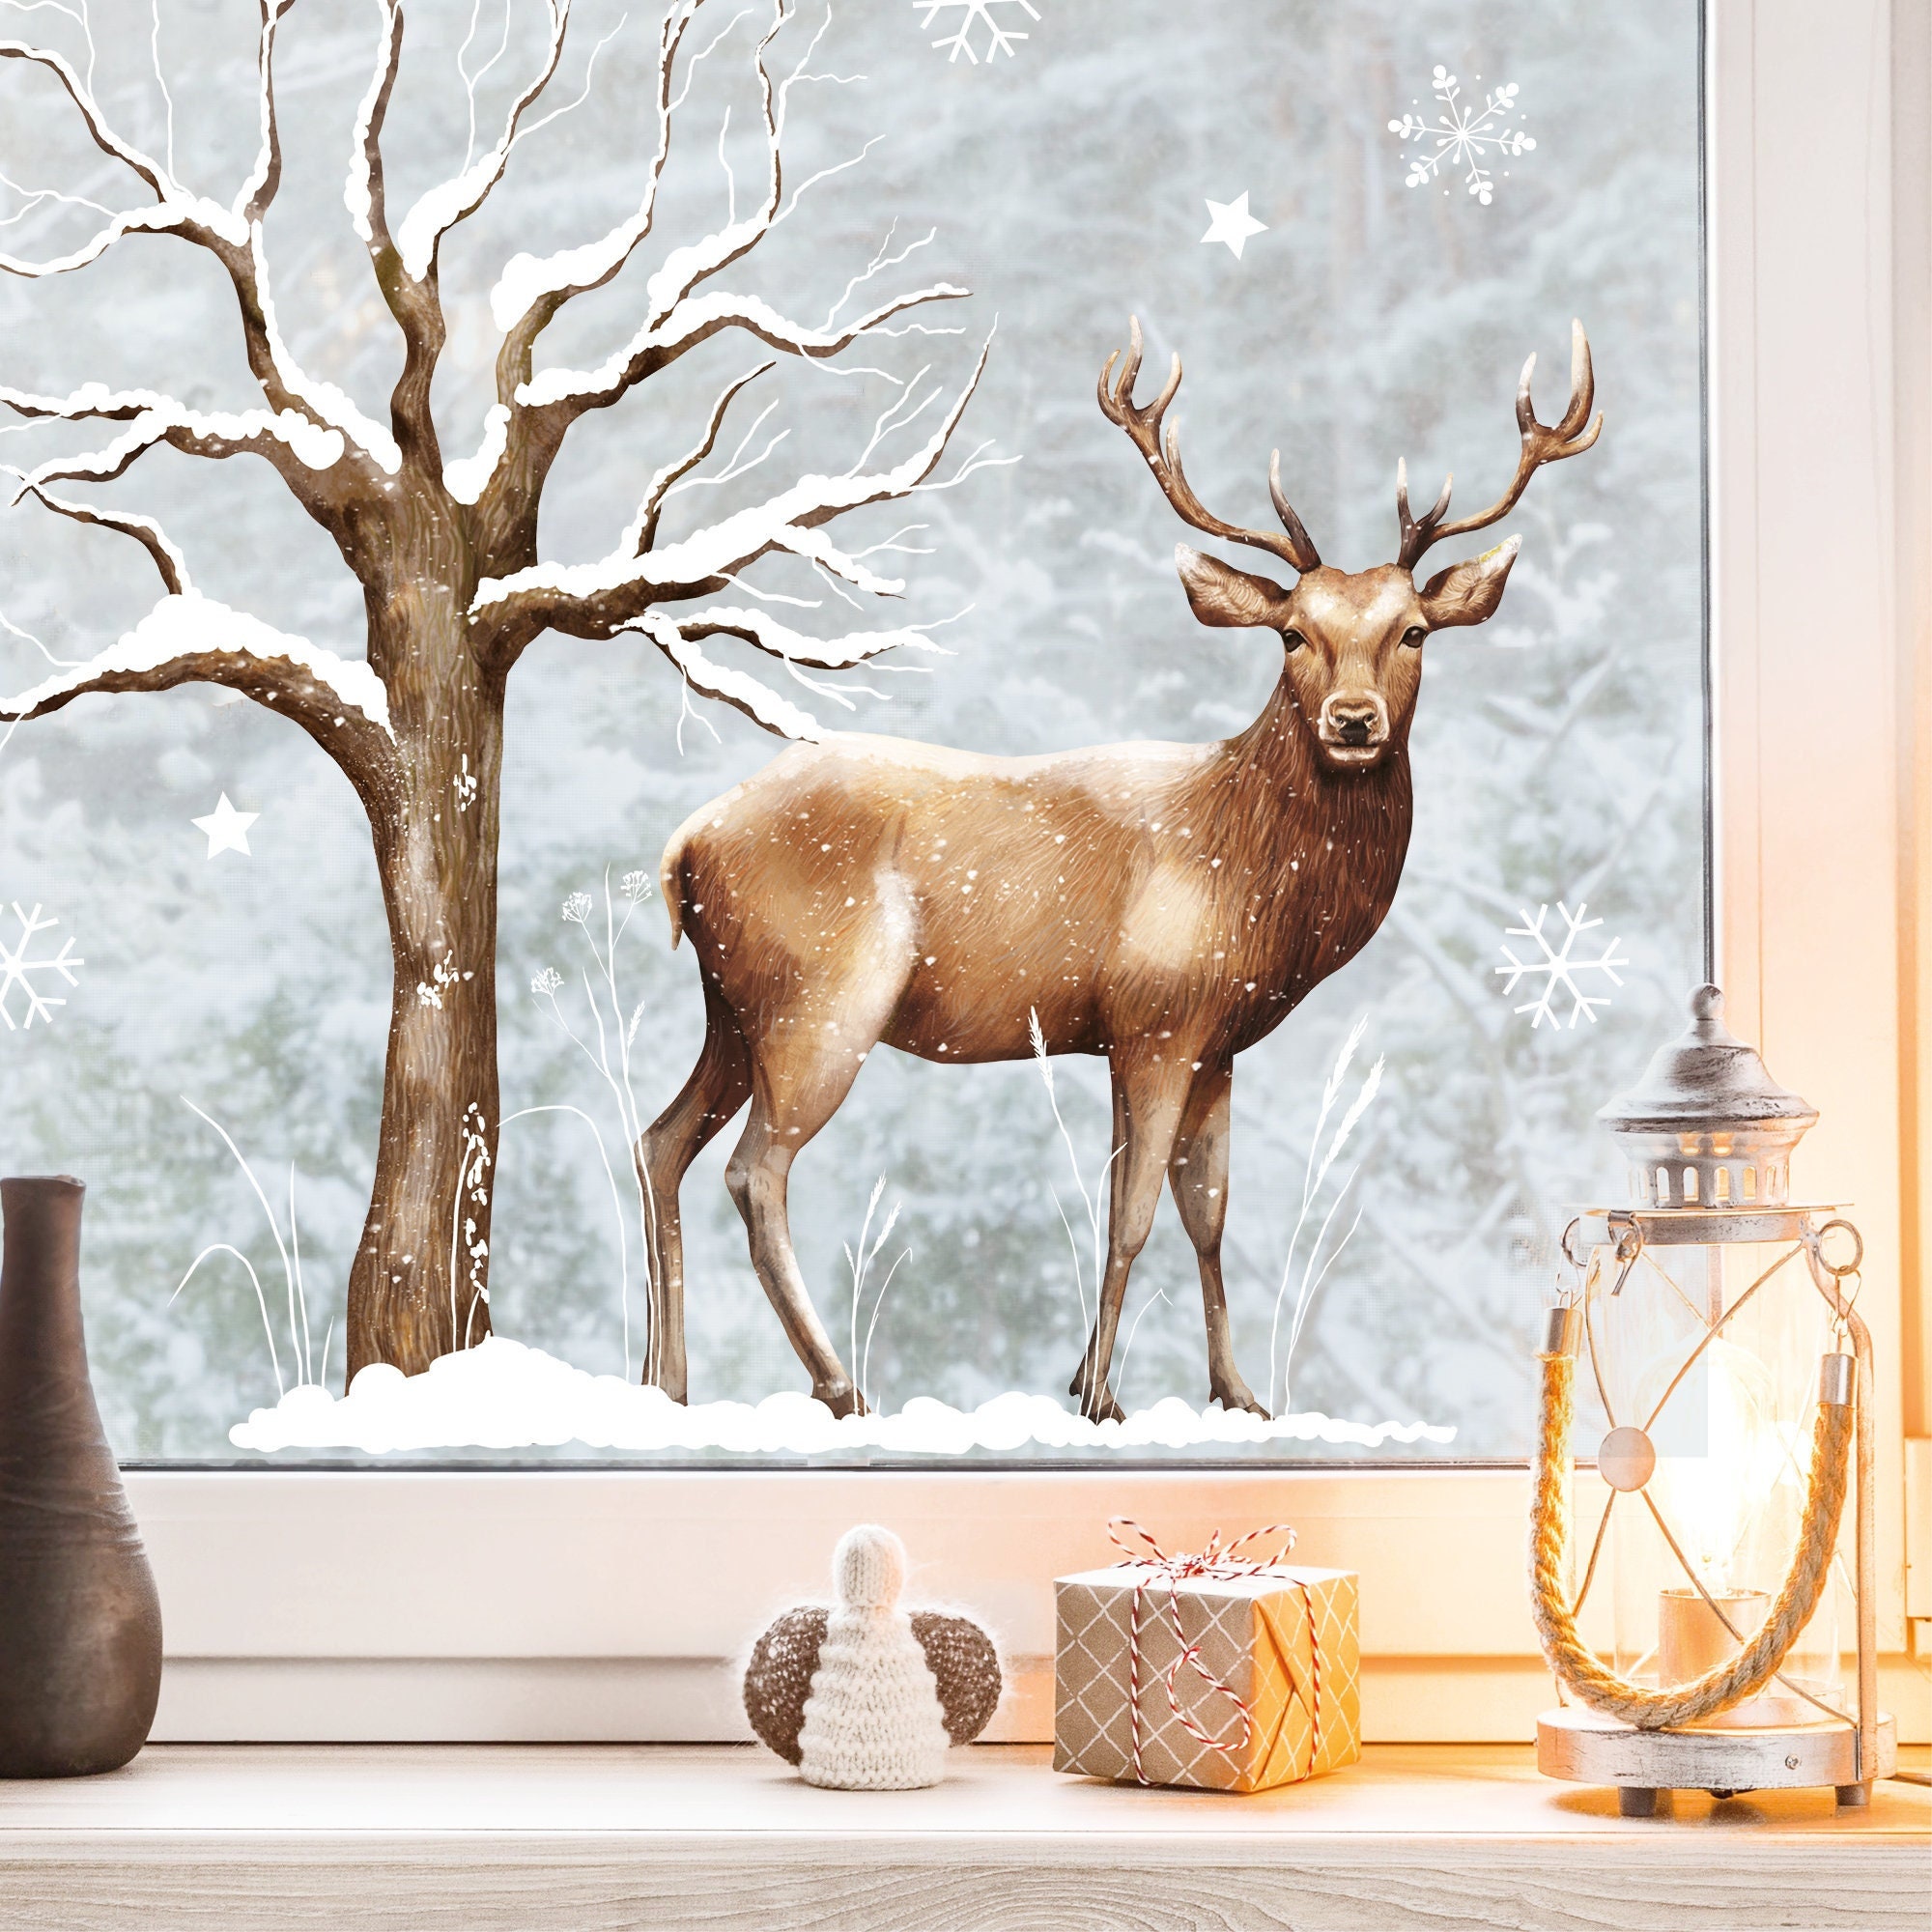 Fensterbild Weihnachten Winter Hirsch mit Schnee und einem beschneiten Baum